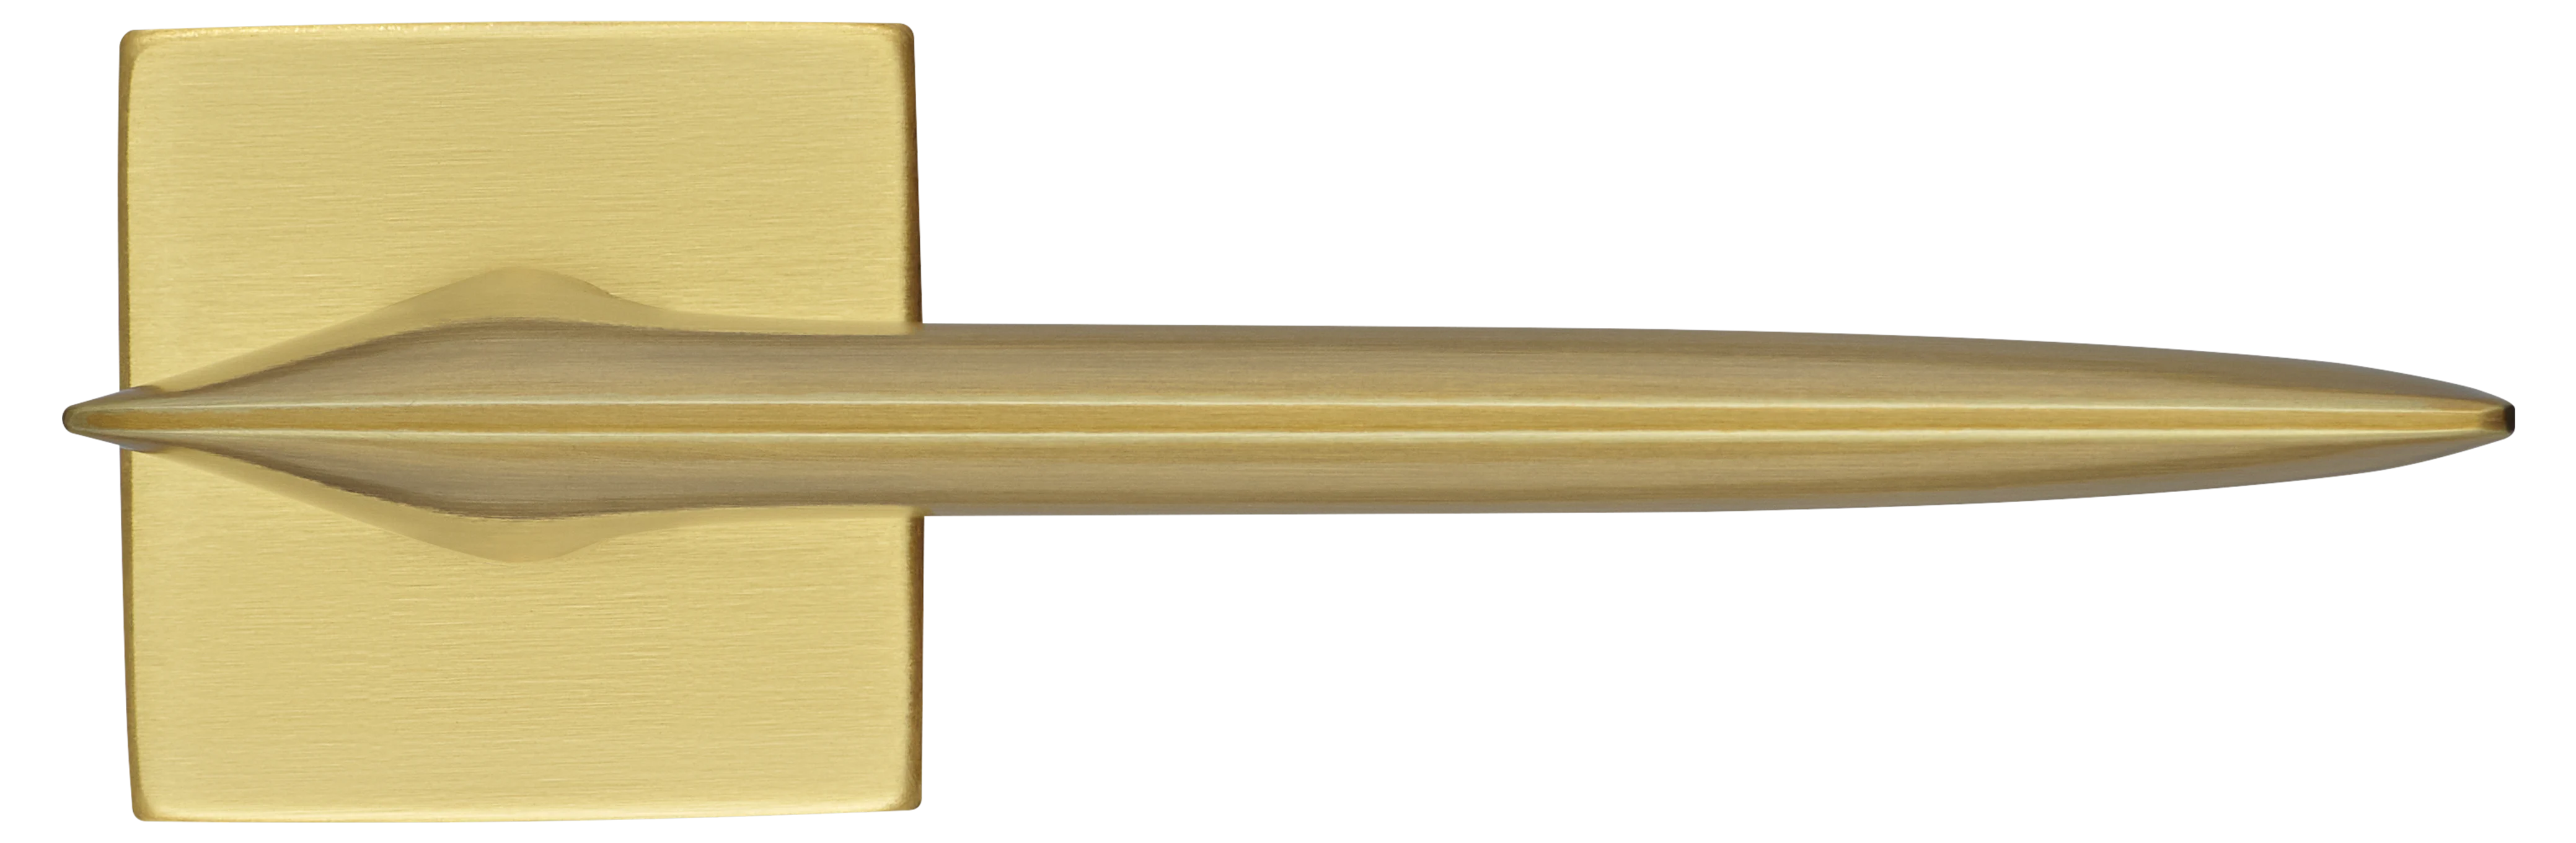 GALACTIC S5 OSA, ручка дверная, цвет -  матовое золото фото купить в Набережных Челнах